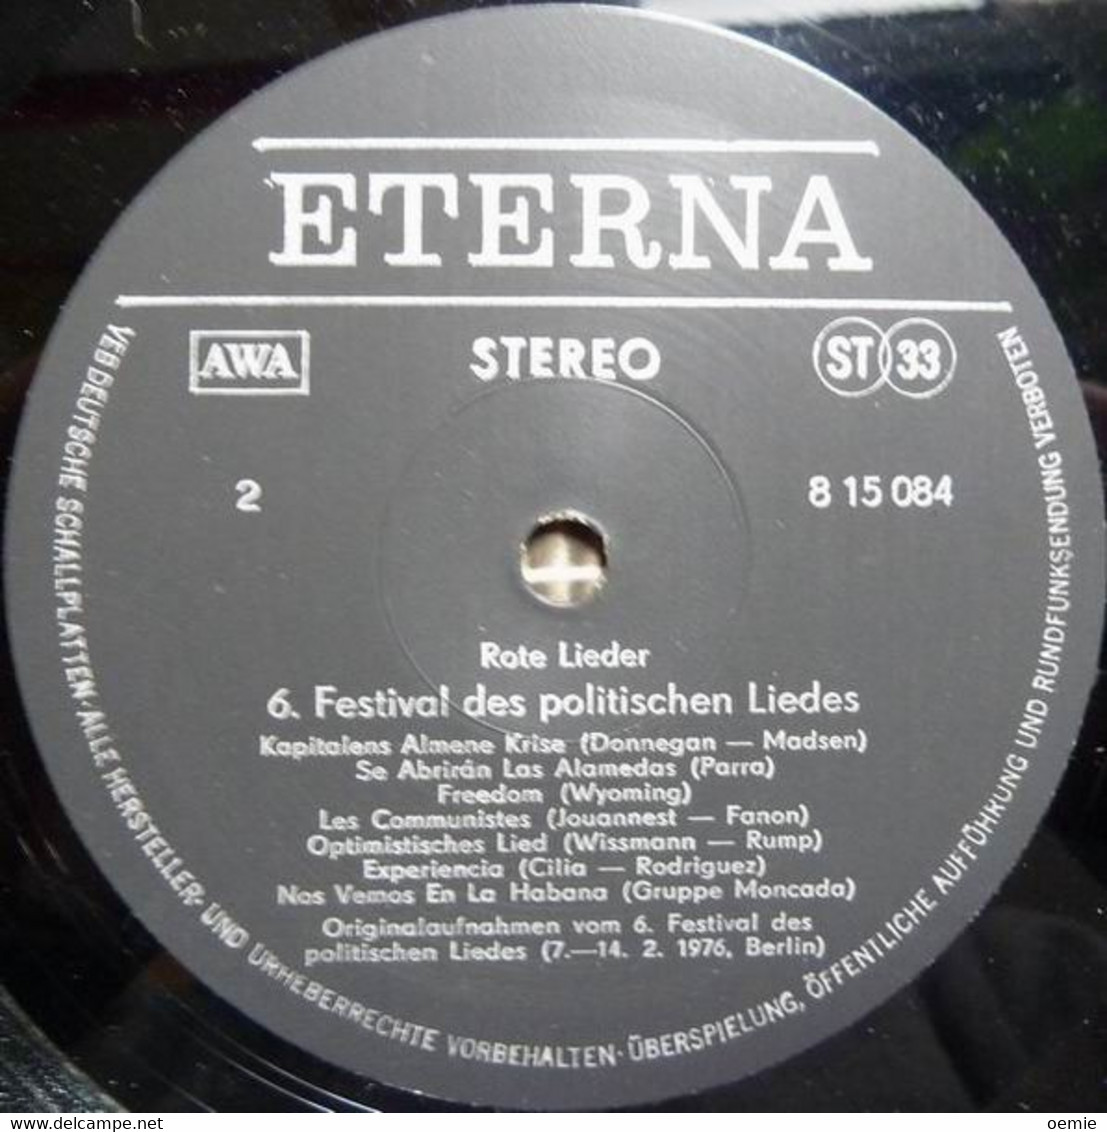 ROTE  LIEDER  °  BERLIN  7 / 14 2 / 1976  °  6 FESTIVAL  DES POLITISCHEN  LIEDES - Otros - Canción Alemana